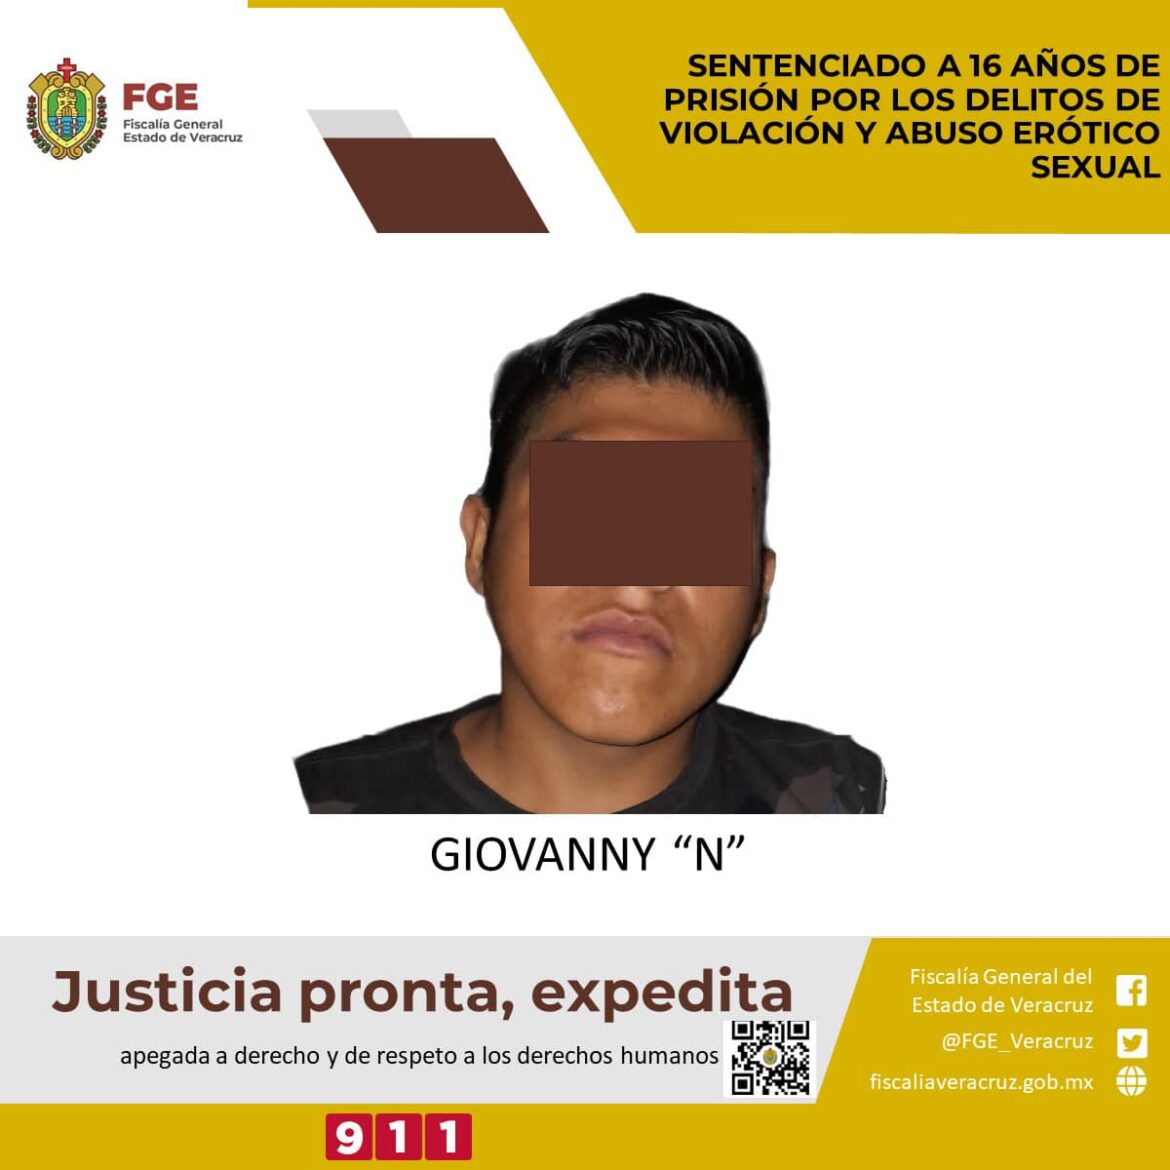 Le aplican 16 años de prisión a Giovanny “N” por abuso sexual contra dos menores